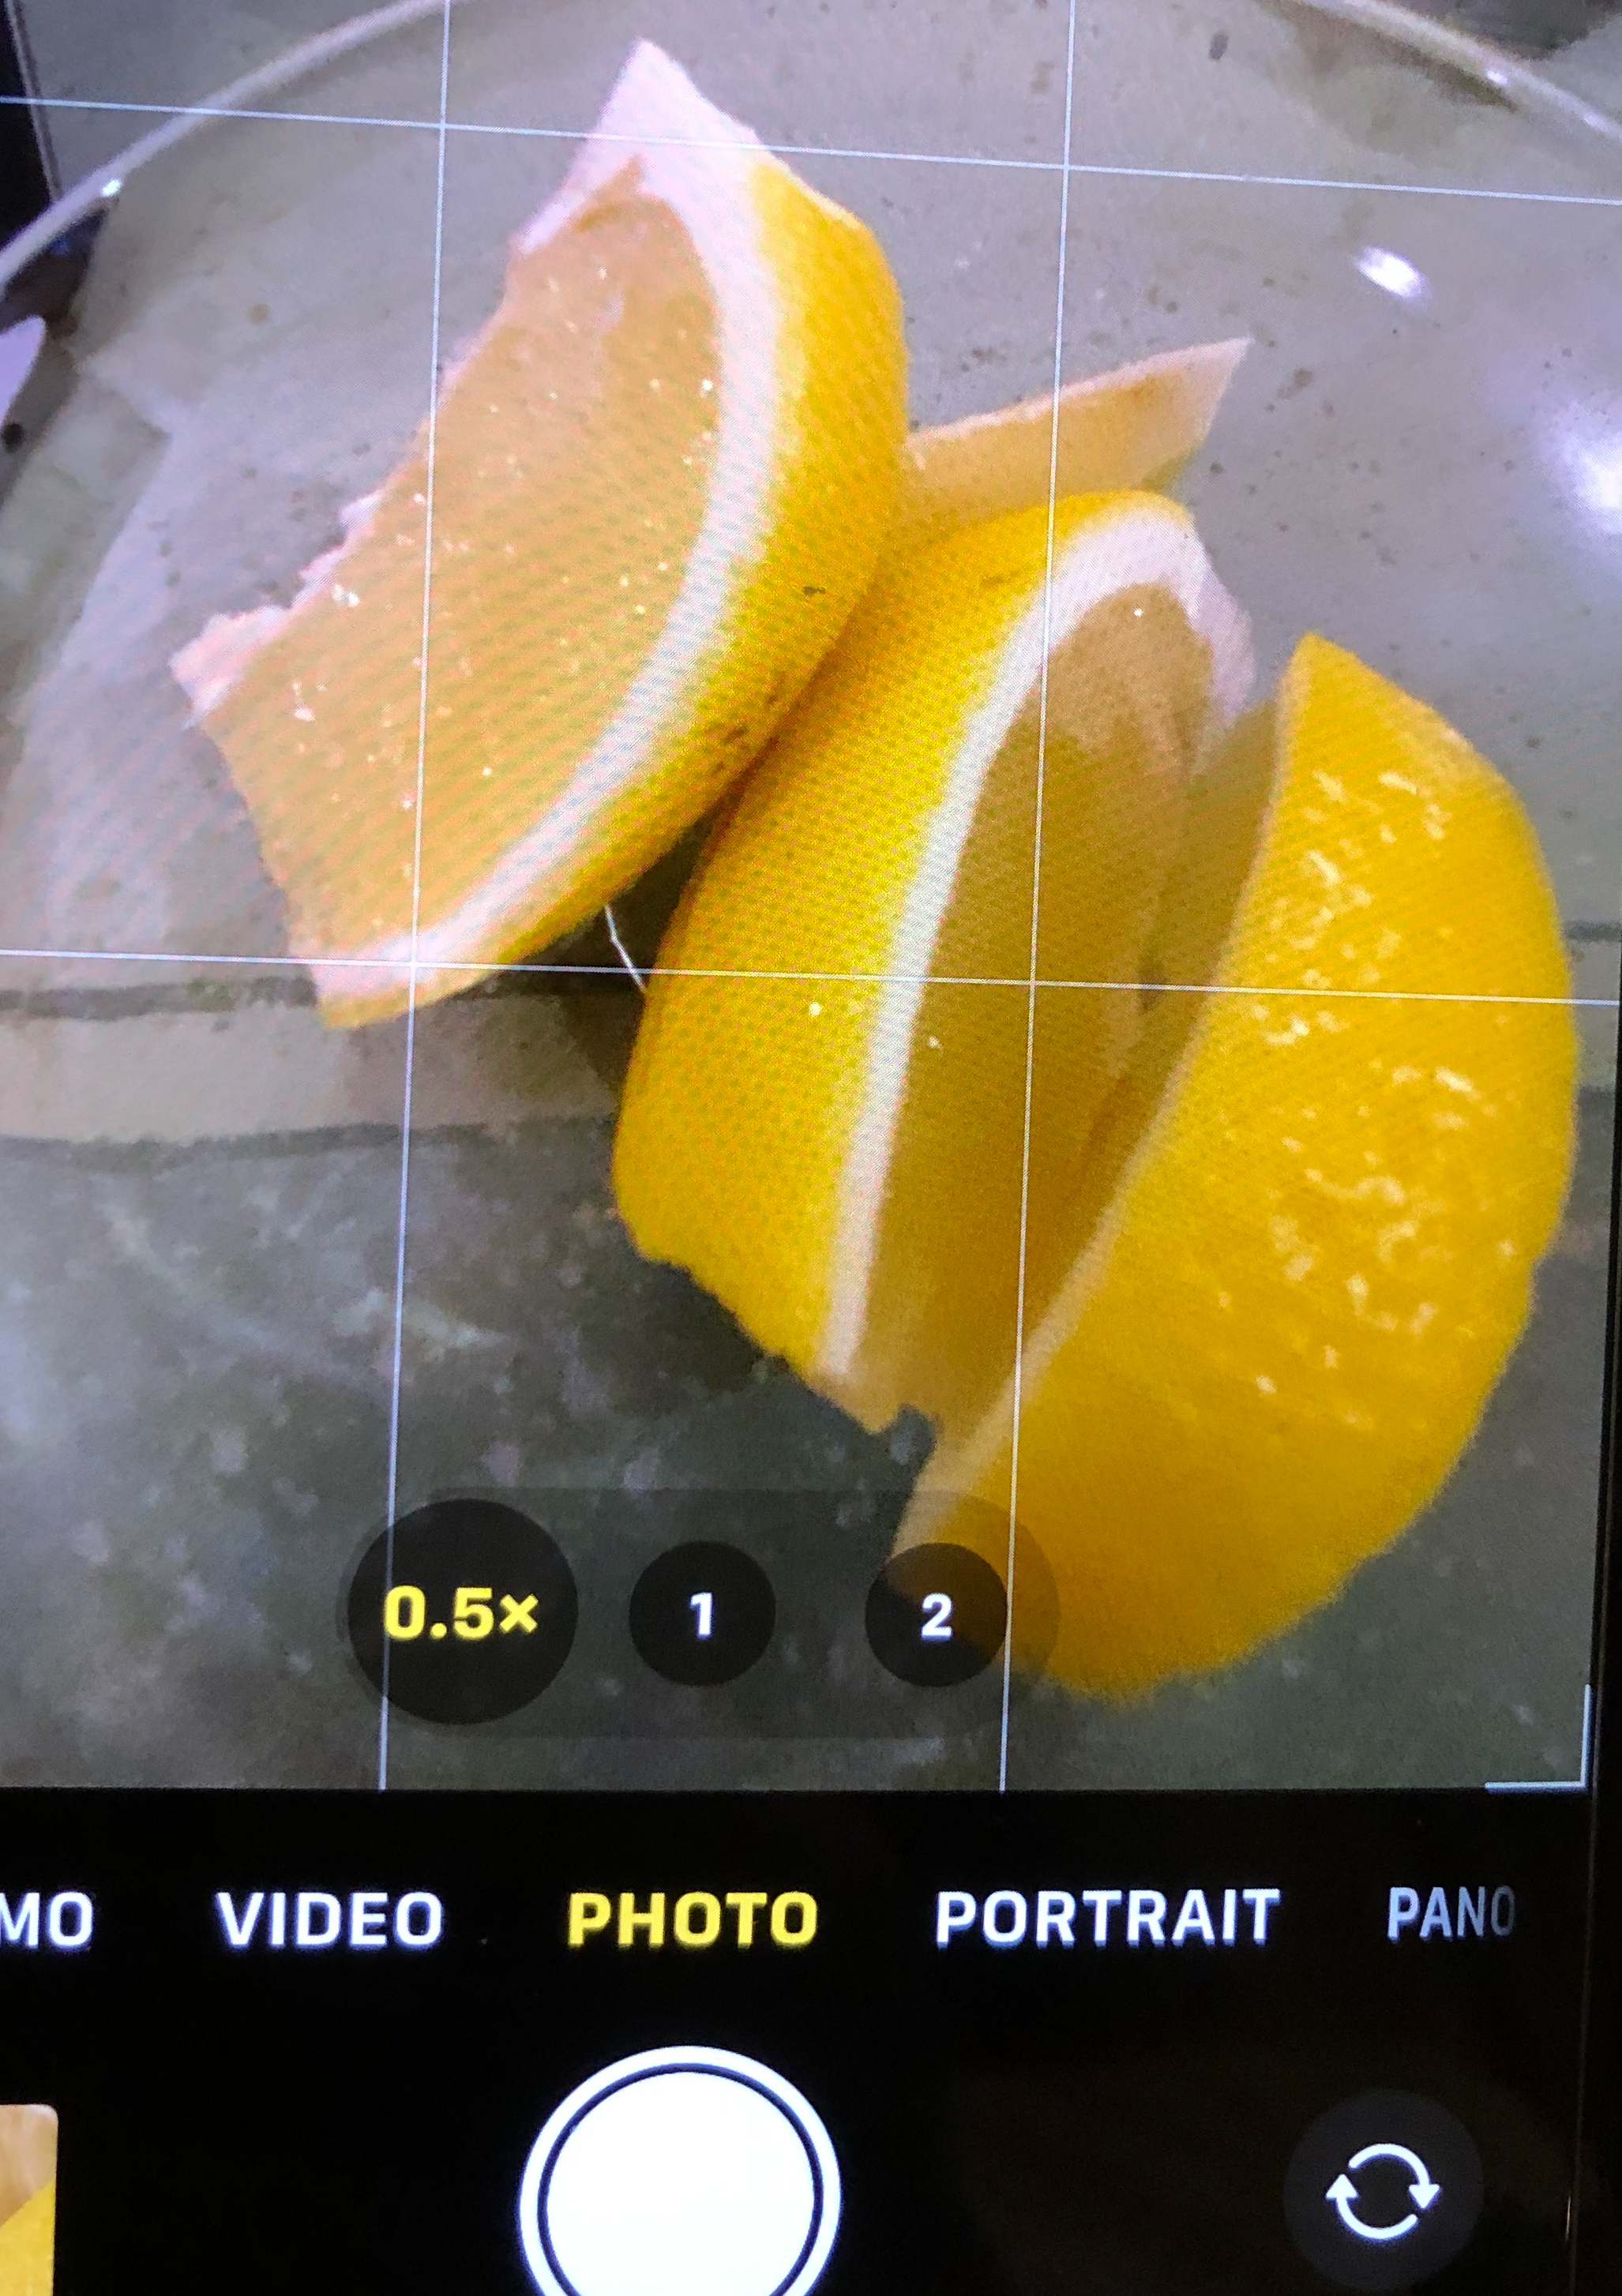 View of lemons